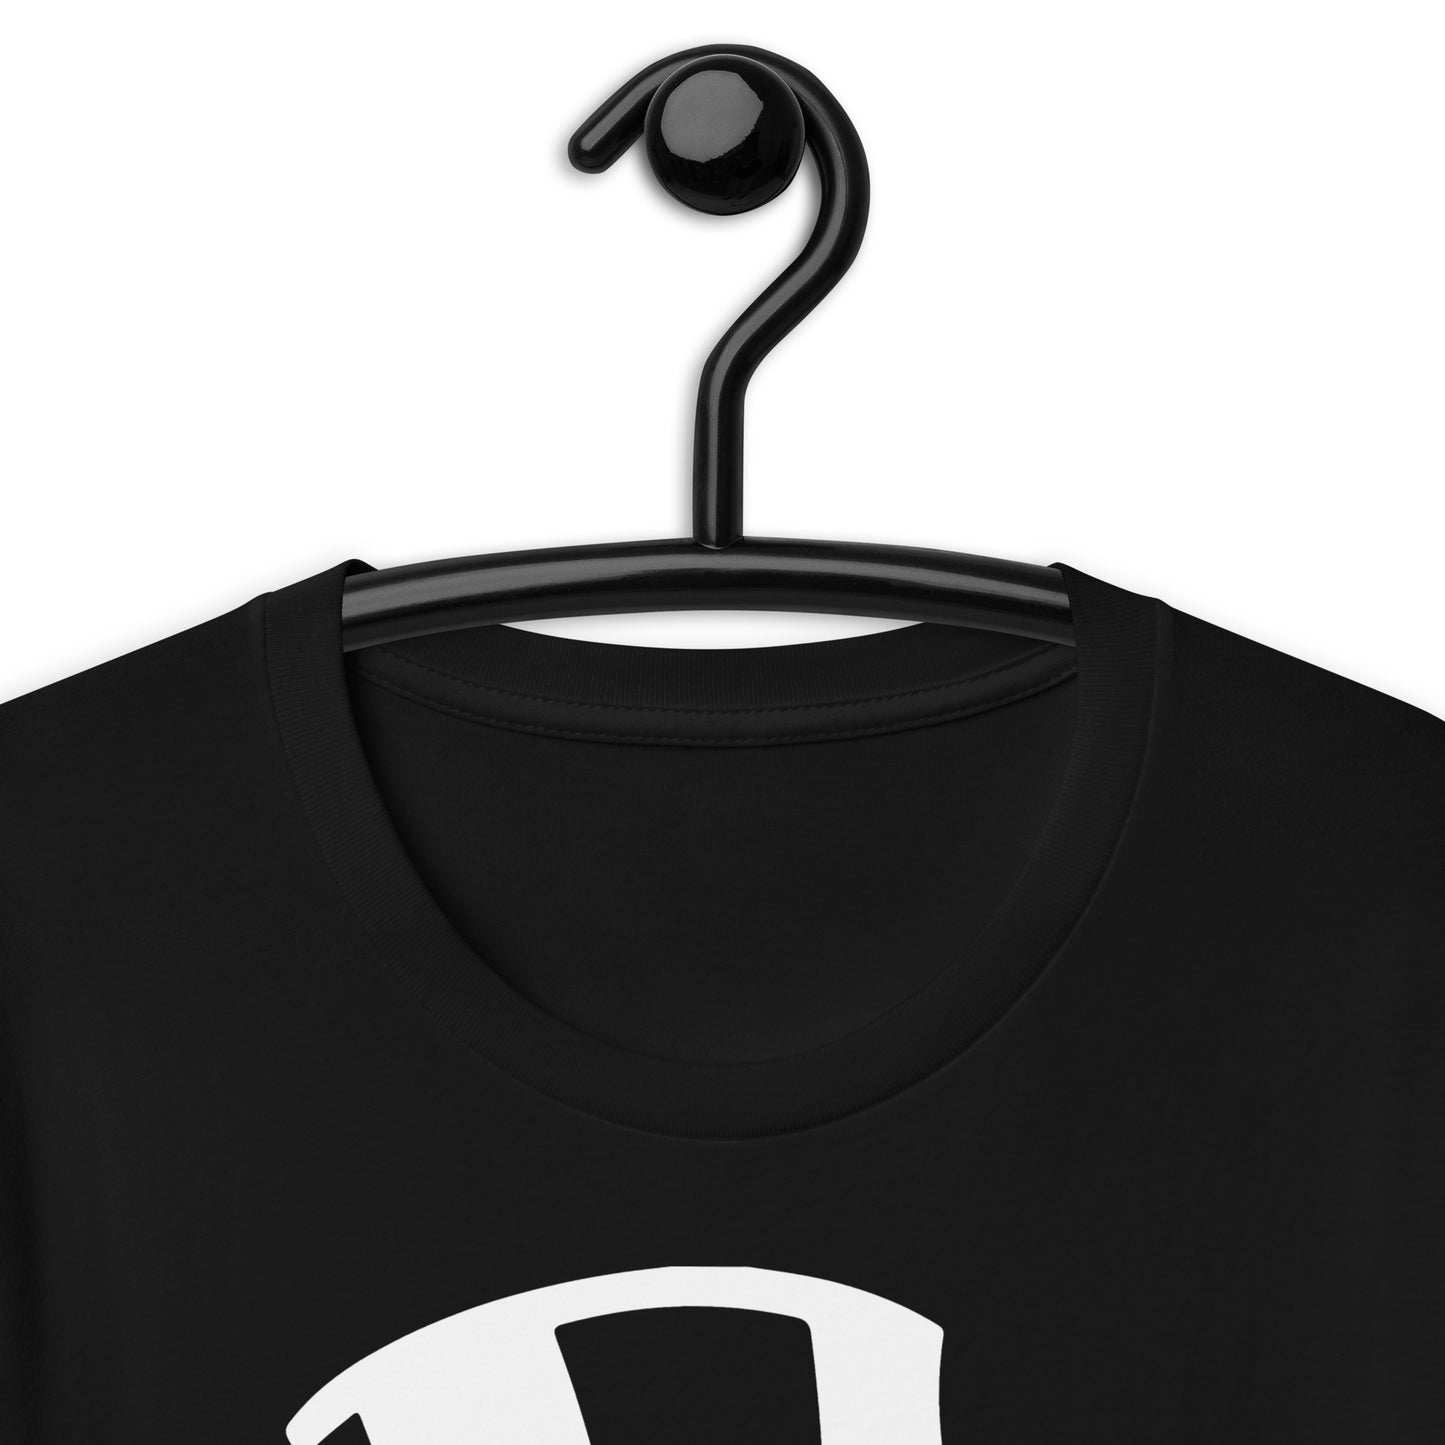 HEX Monopoly Man Unisex T-Shirt